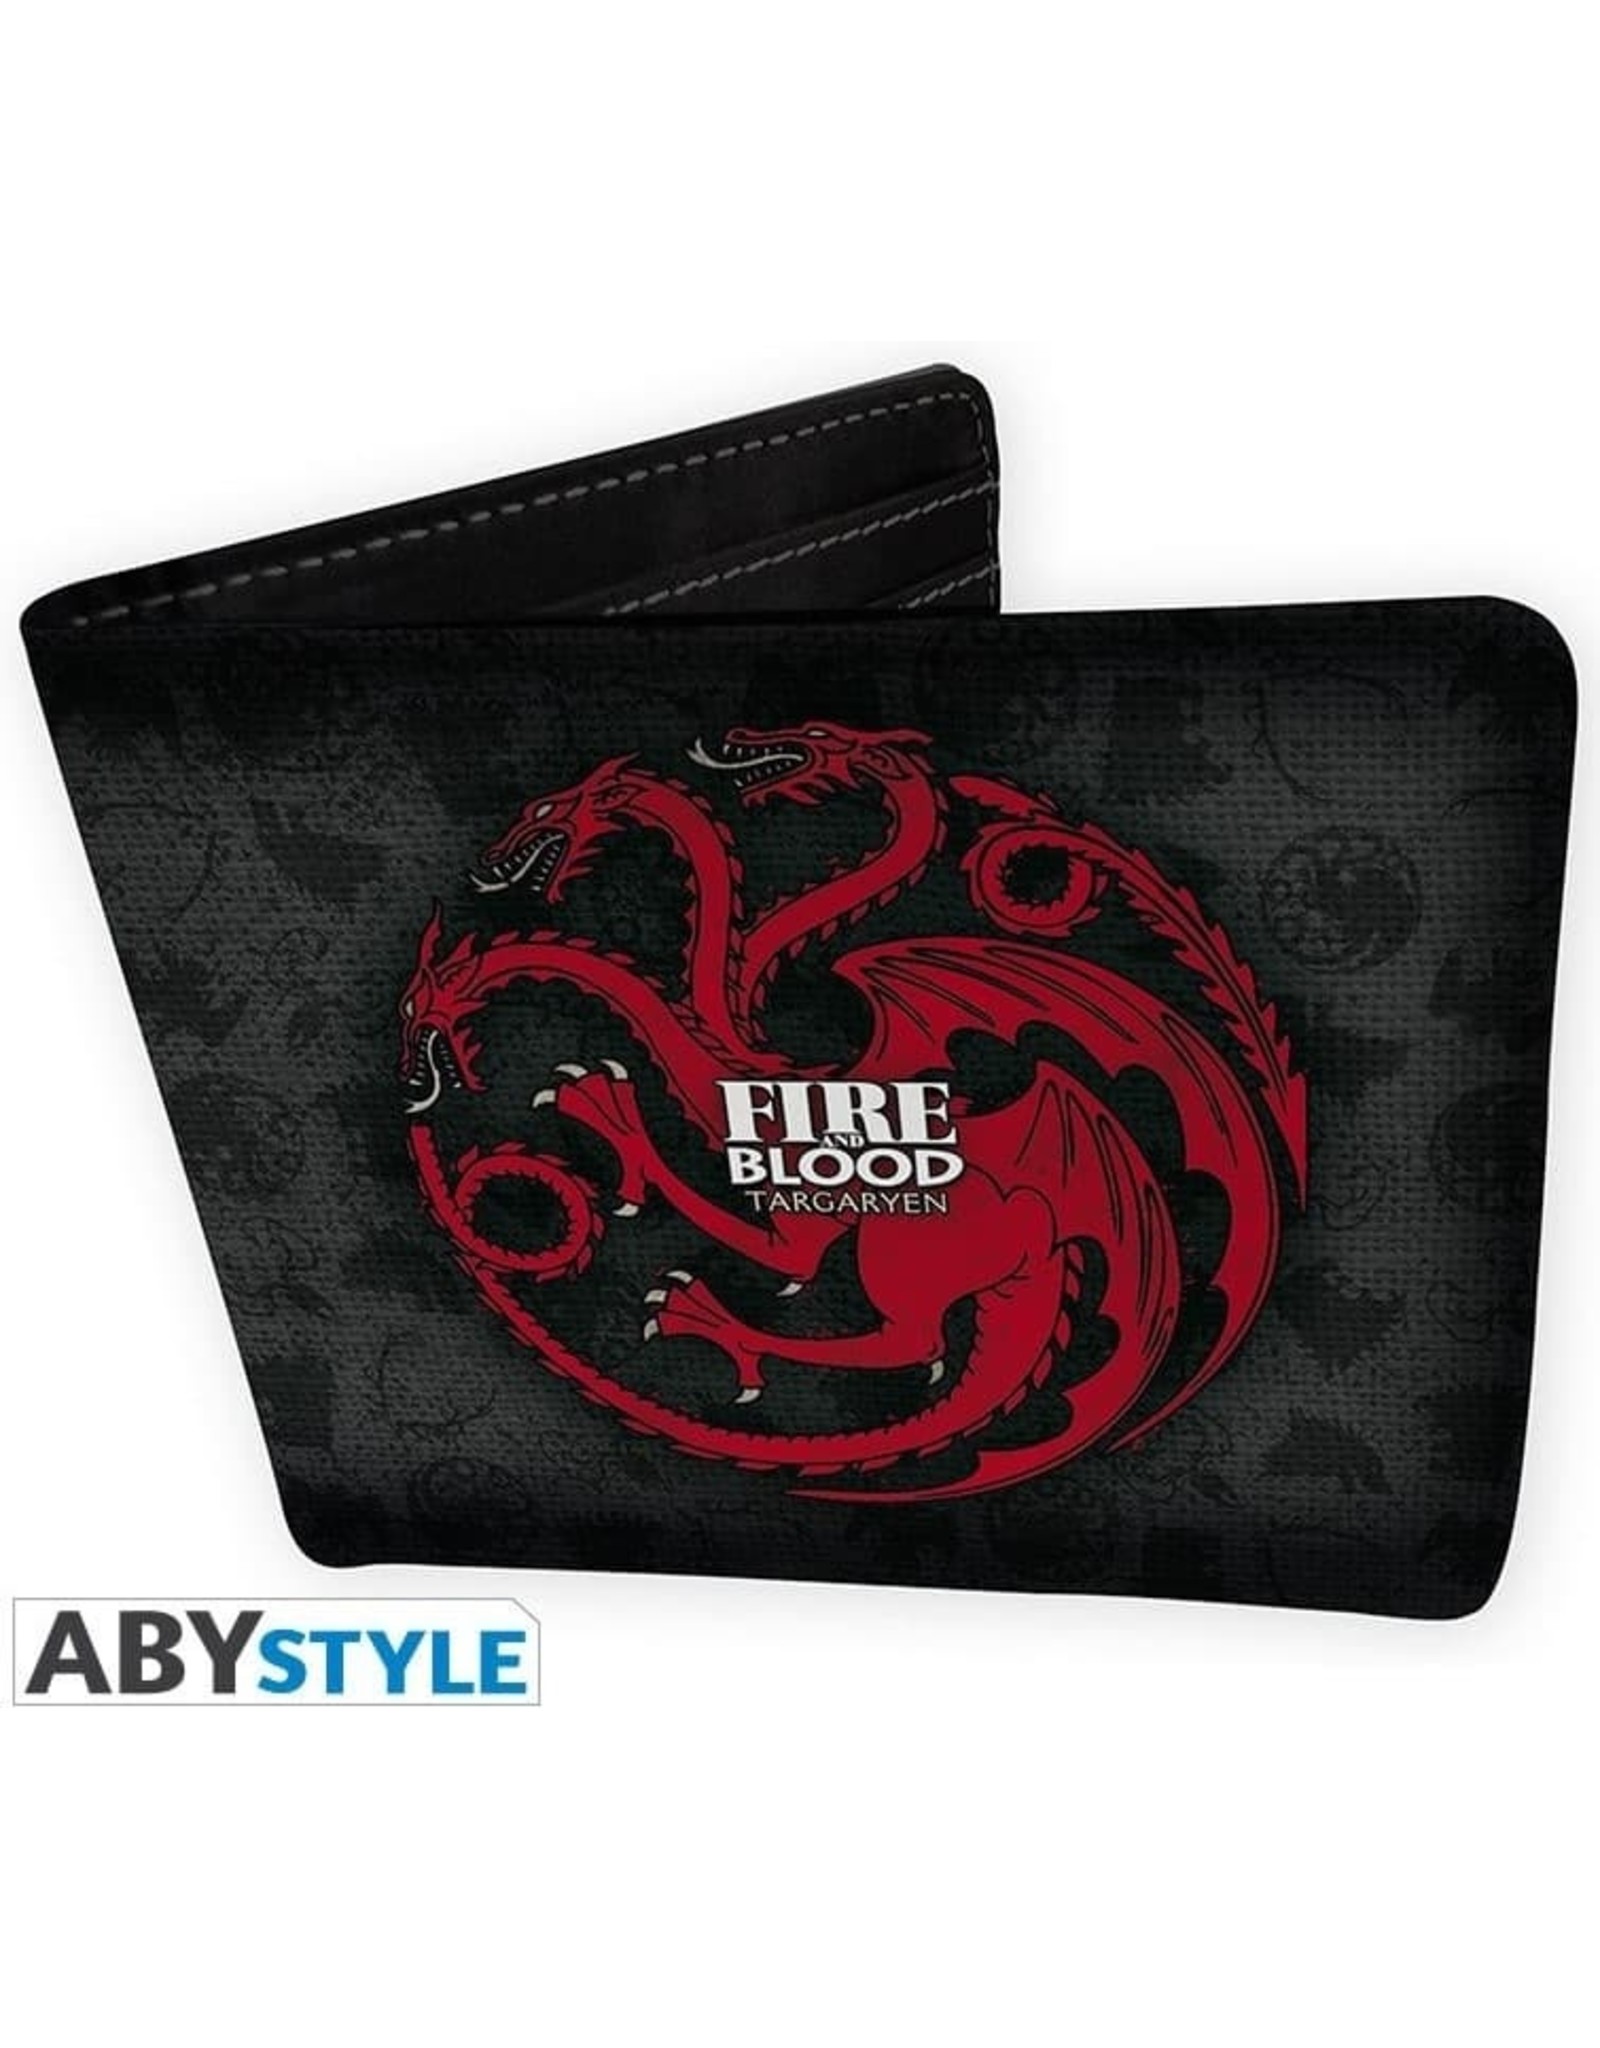 Game of Thrones Merchandise wallets - Game of Thrones Targaryen Wallet